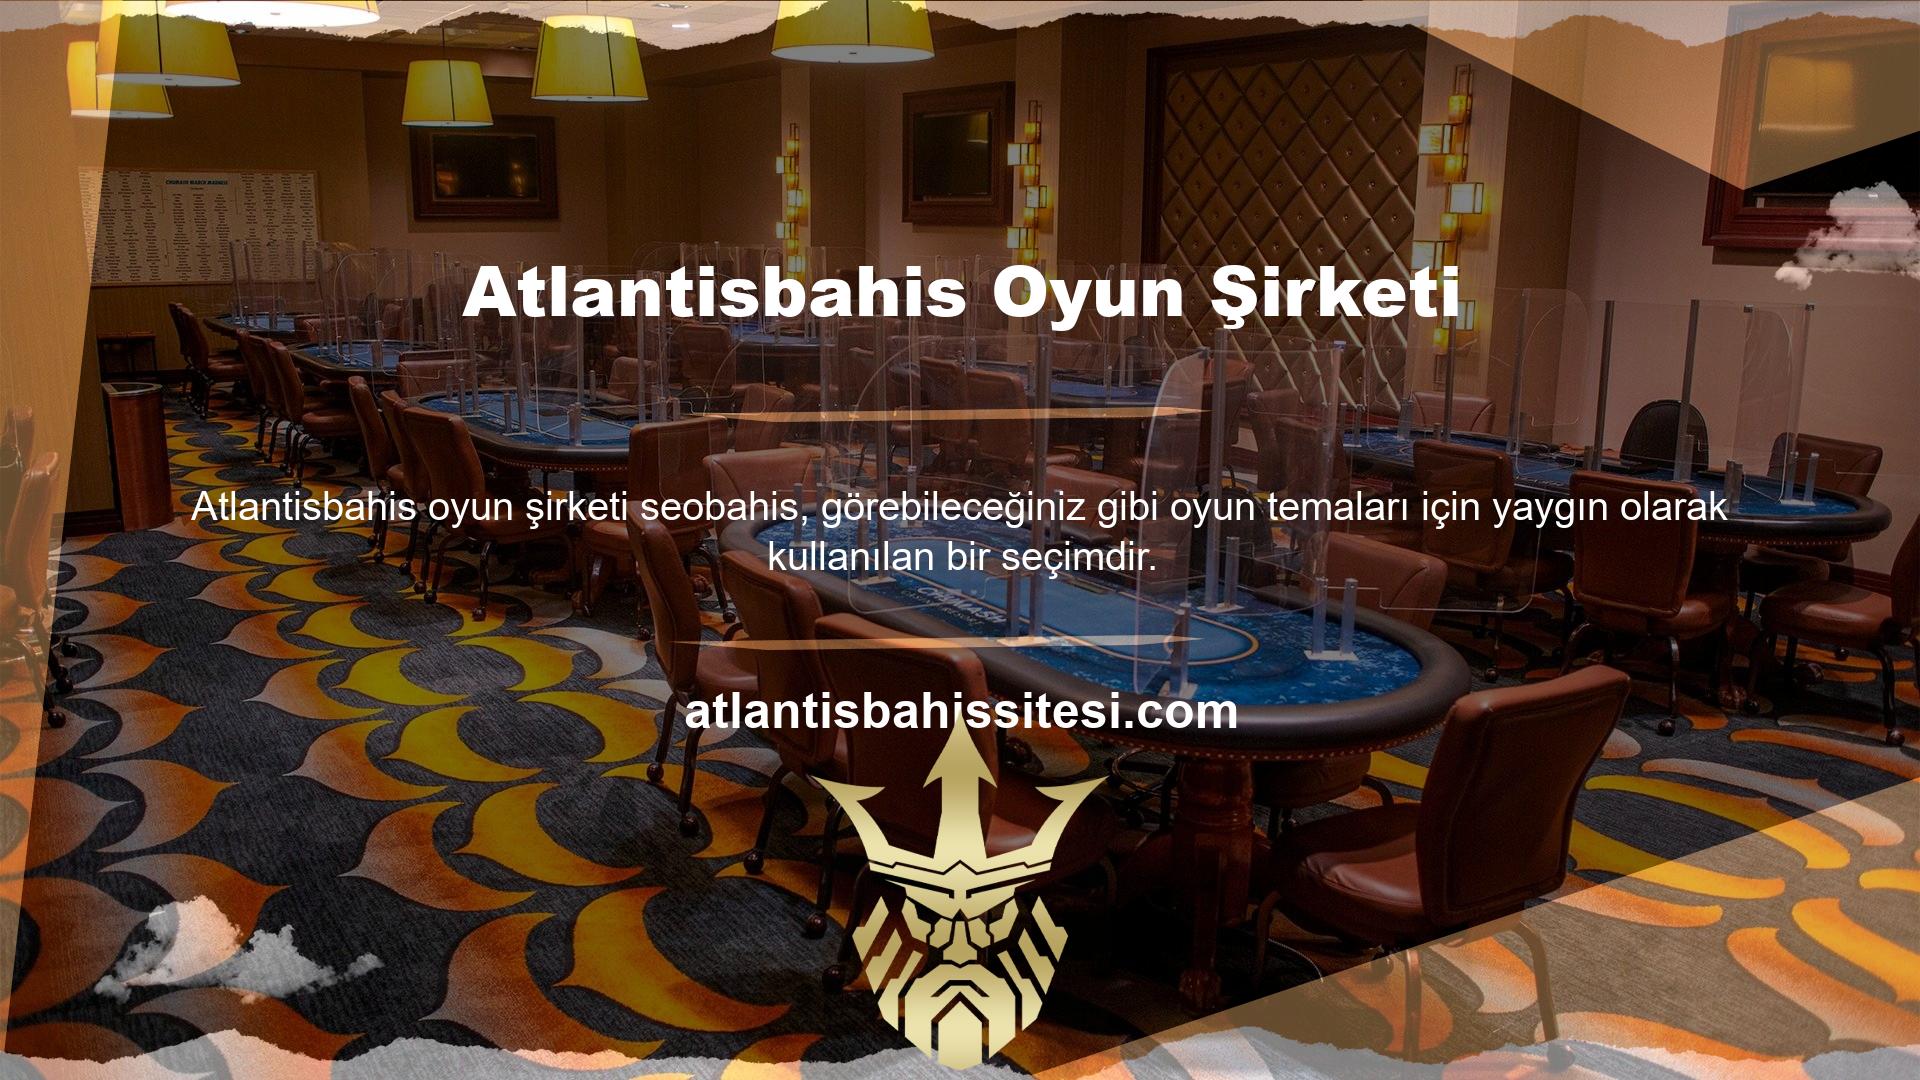 Atlantisbahis web sitesini seçtiğinizde dünyanın en önemli bahis piyasasına giriş yapmış olursunuz